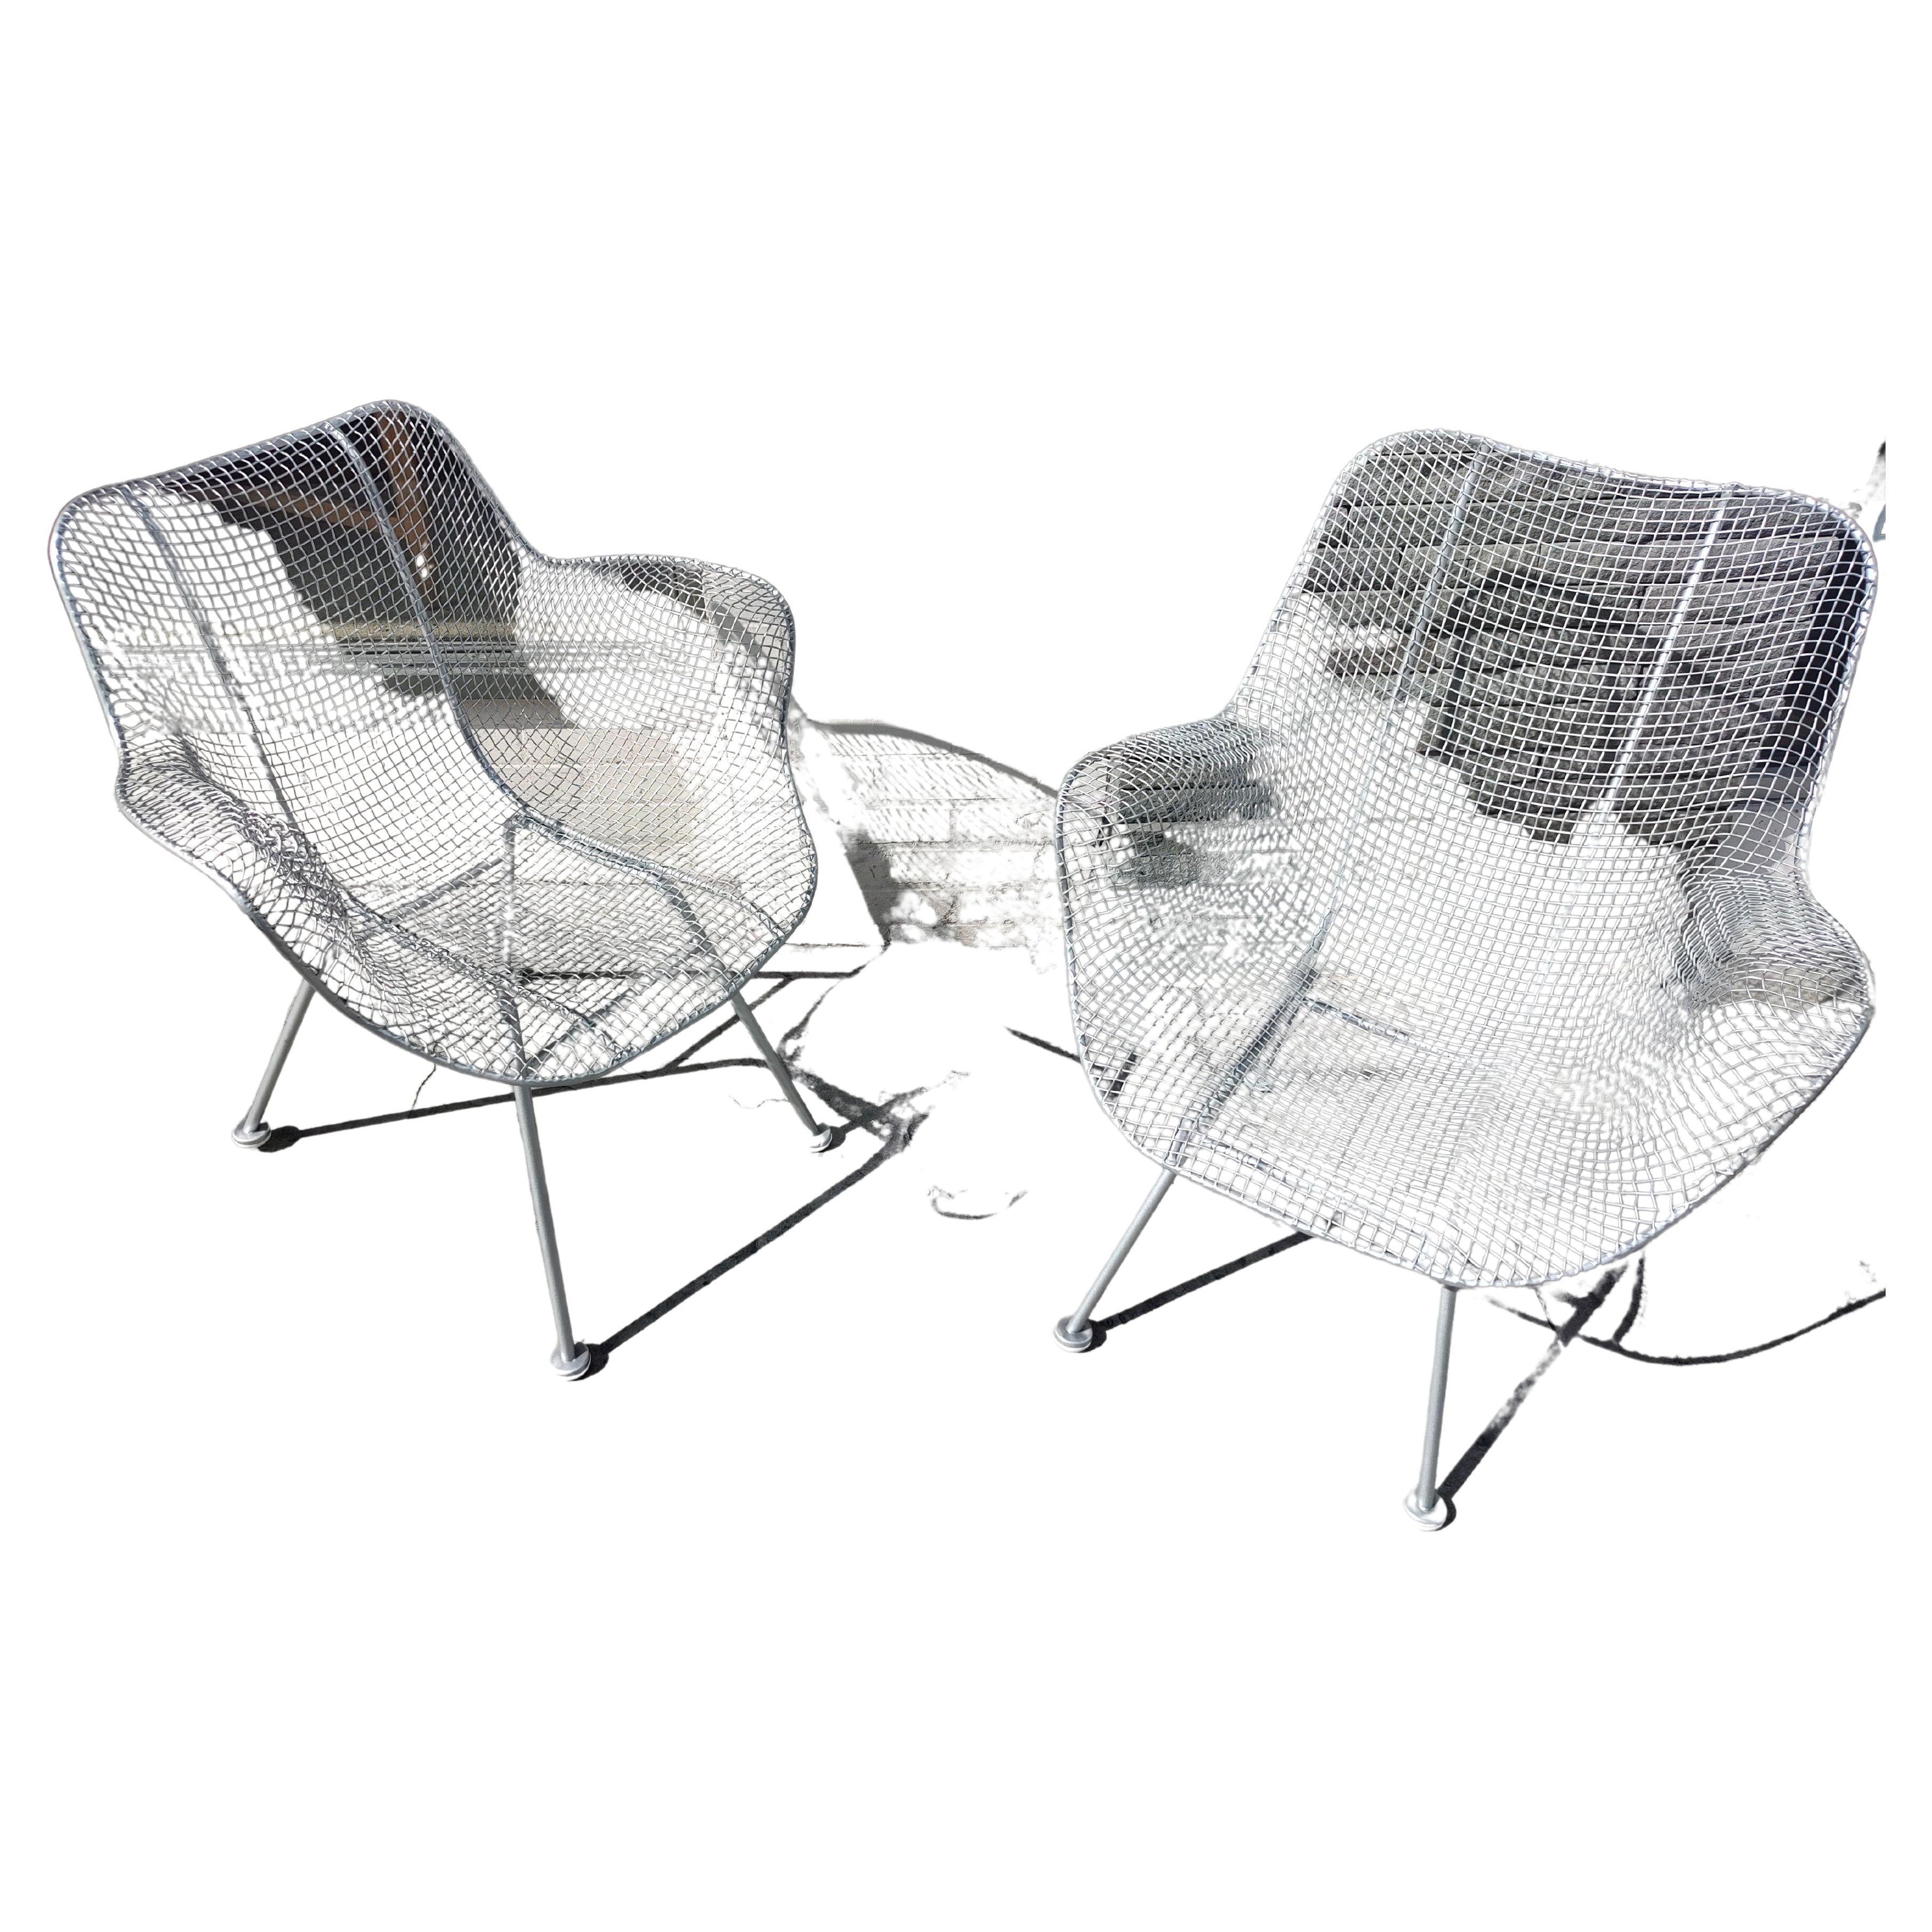 Restauriert in der Nähe von Paar Sculptura Sessel Lounge Stühle. Völlig gereinigt und silberfarben pulverbeschichtet mit neuen Kunststoffbodengleitern. Verkauft als Satz (2)
Ein Stuhl ist etwas kleiner als der andere, 26,25 B x 26 T x 31,75 H x 16